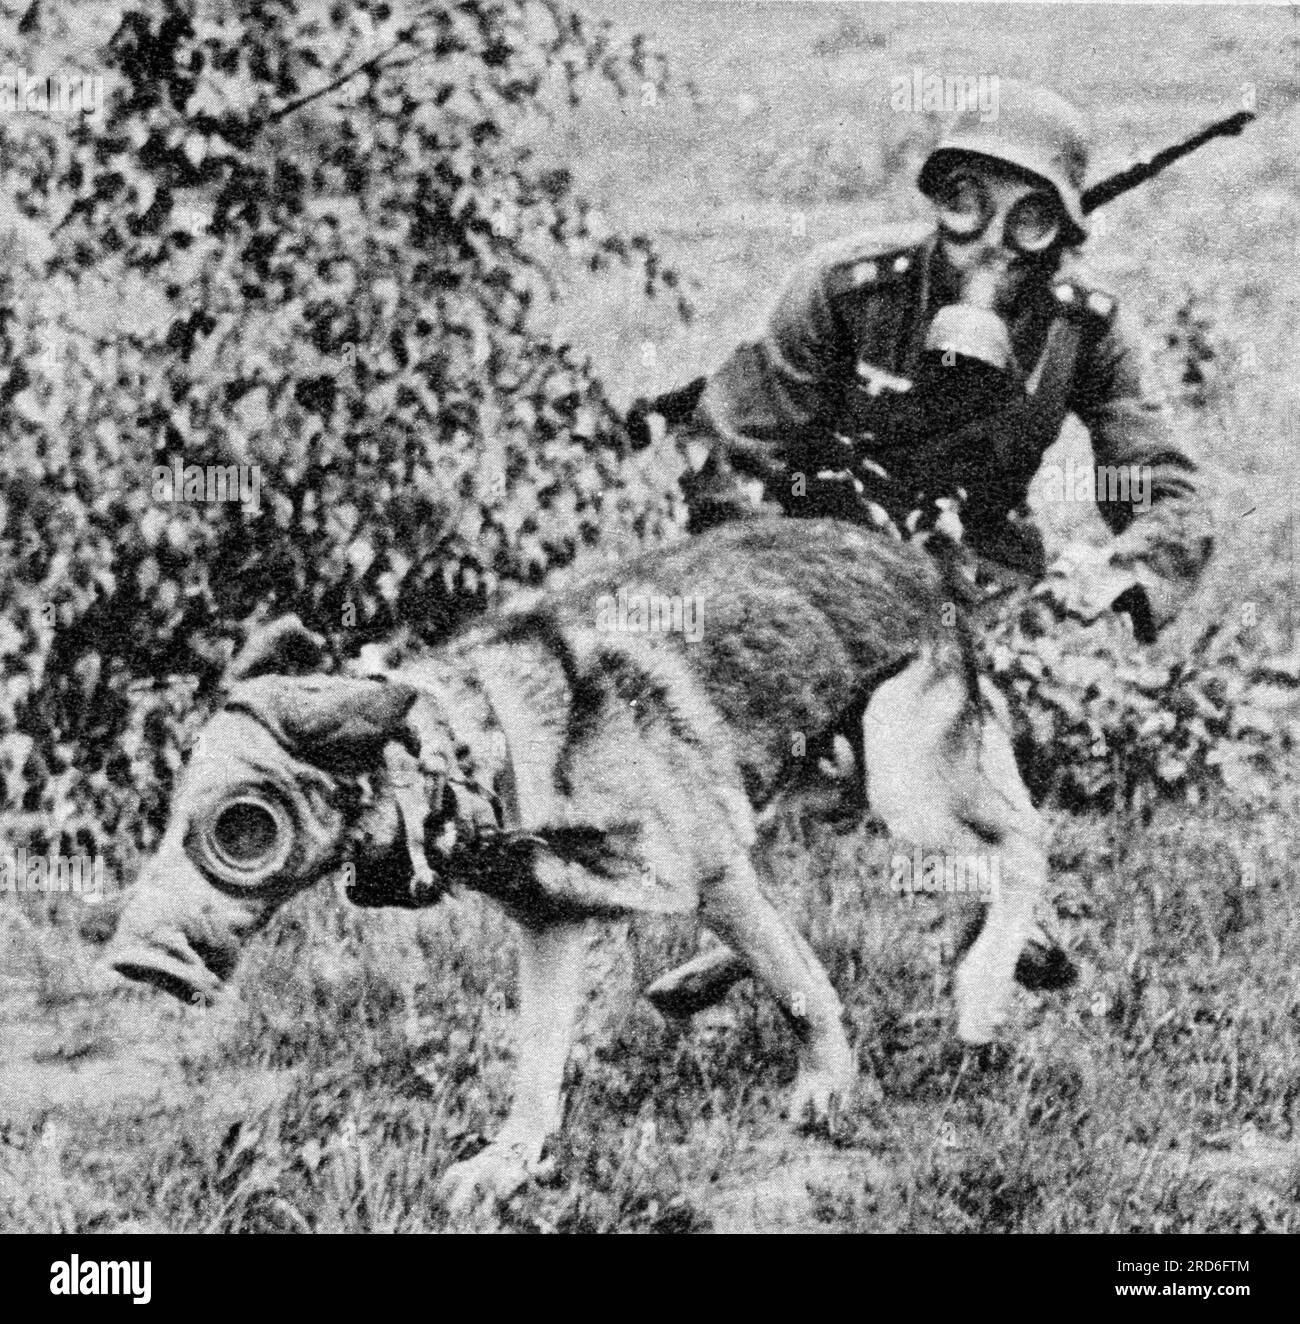 Nationalsozialismus/Nationalsozialismus, Militär, Armee, deutscher Schäferhund als Botenhund, "Koralle", 1940, NUR REDAKTIONELLE VERWENDUNG Stockfoto